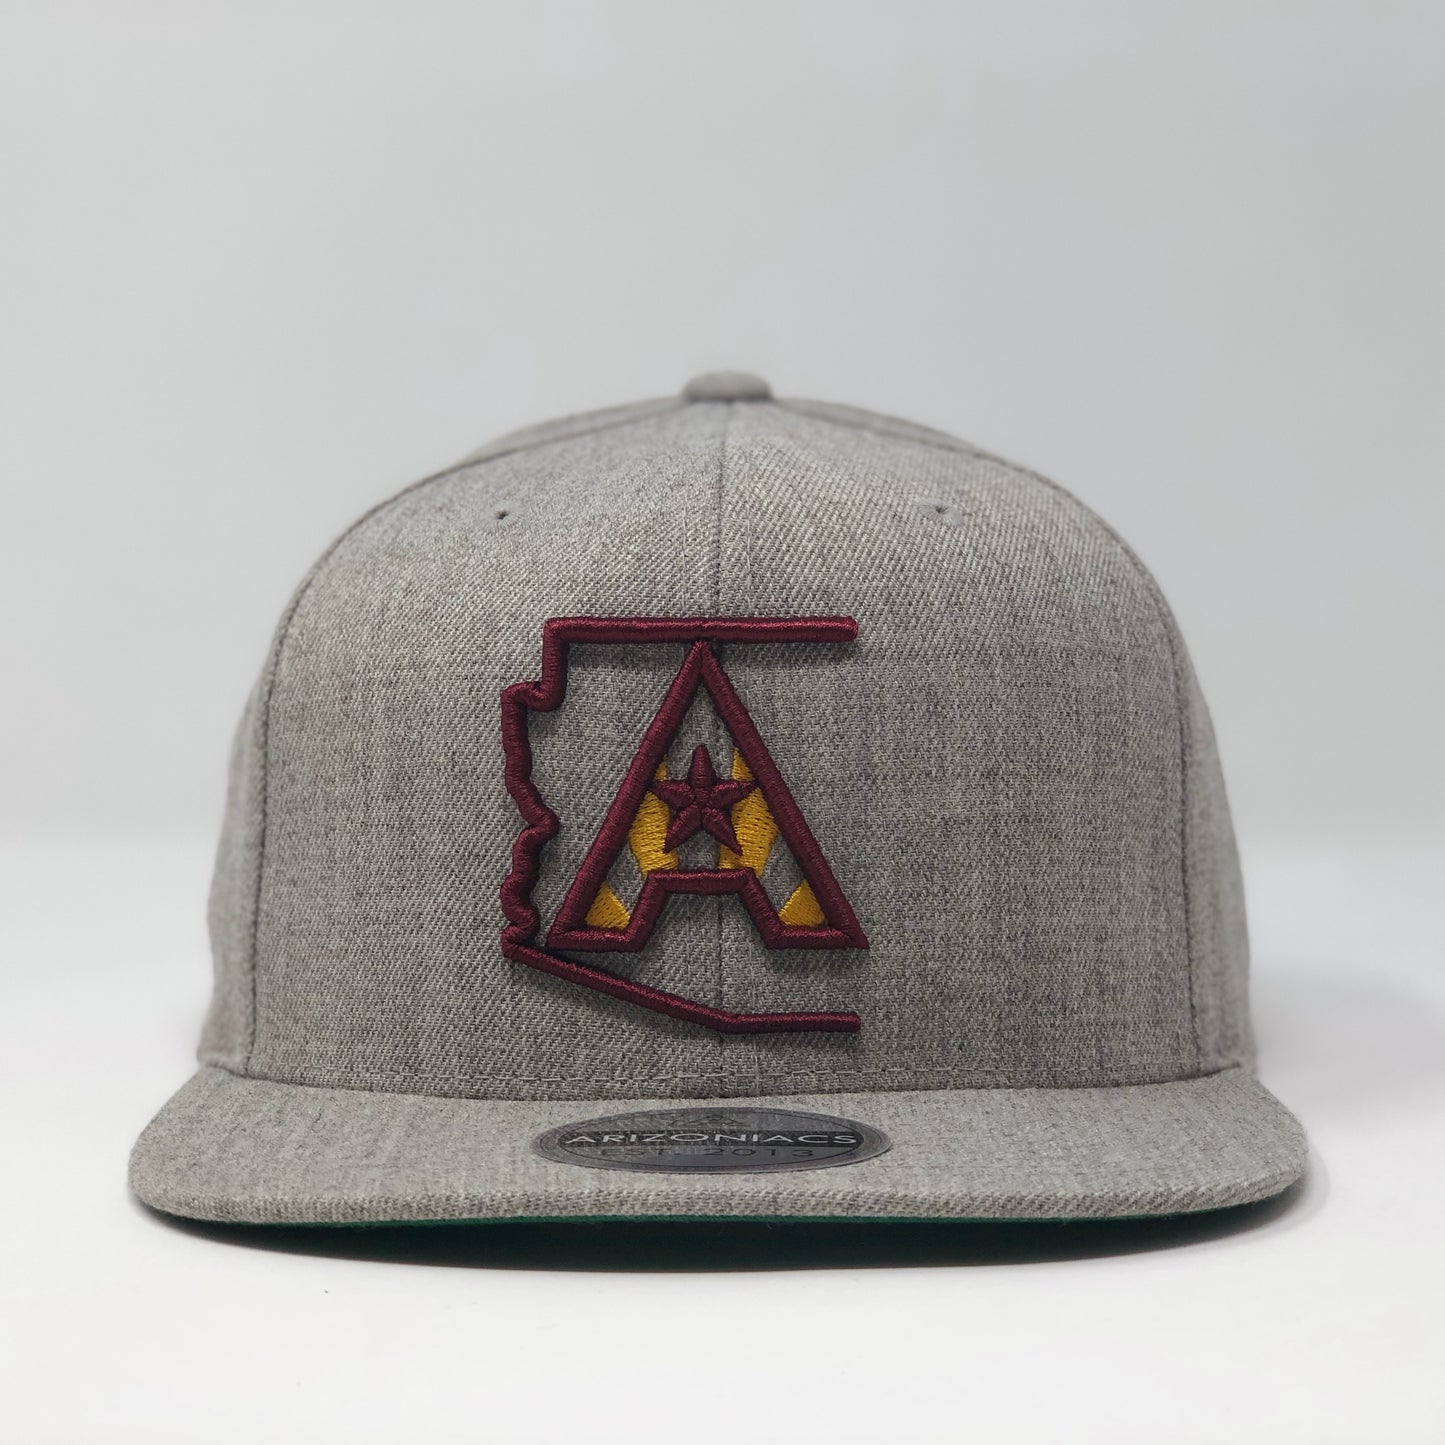 Arizoniacs Logo Flatbill Snapback Cap - Grey with Maroon/Gold